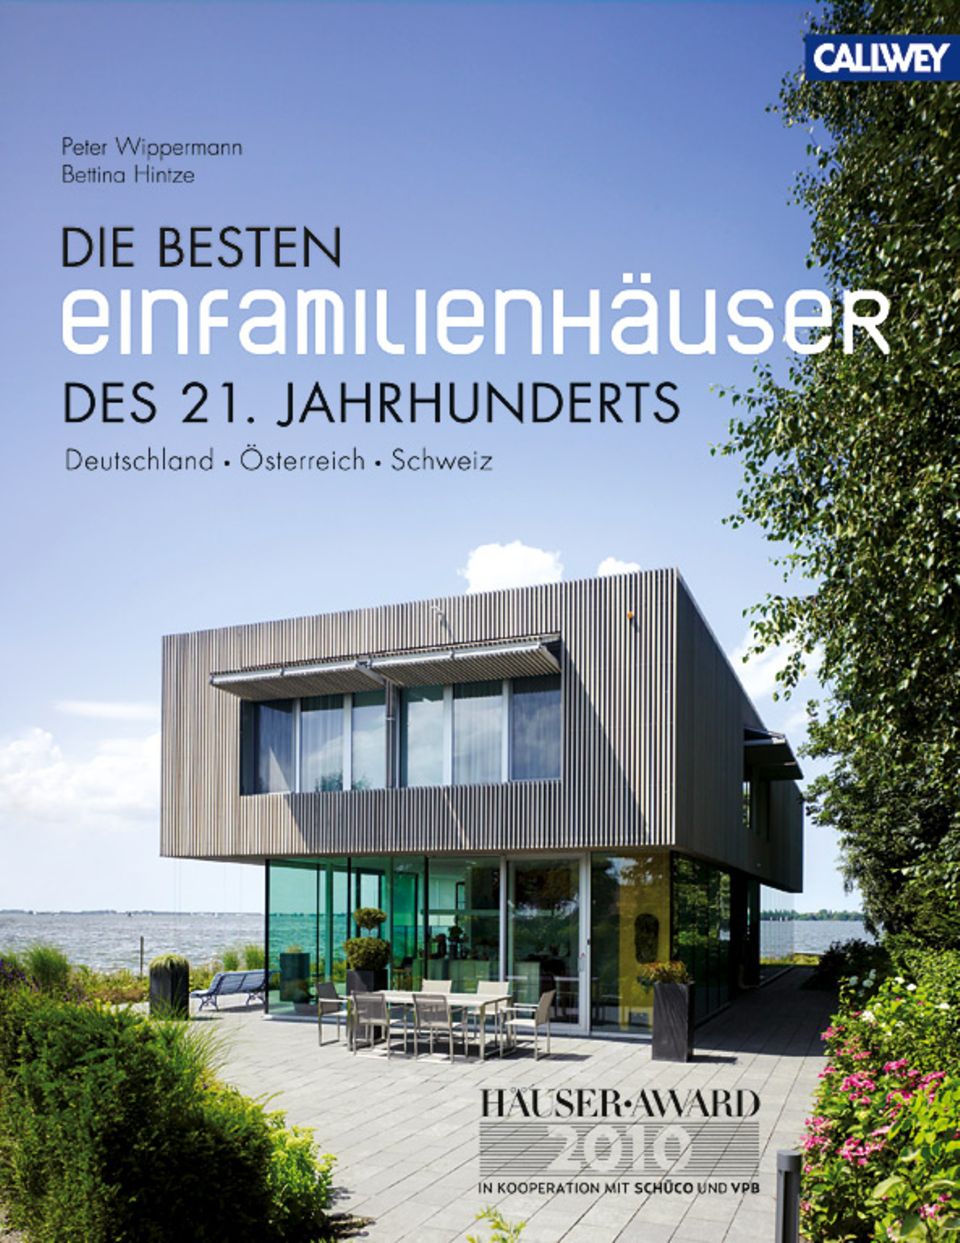 HÄUSER-AWARD 2010: Die Gewinnerhäuser